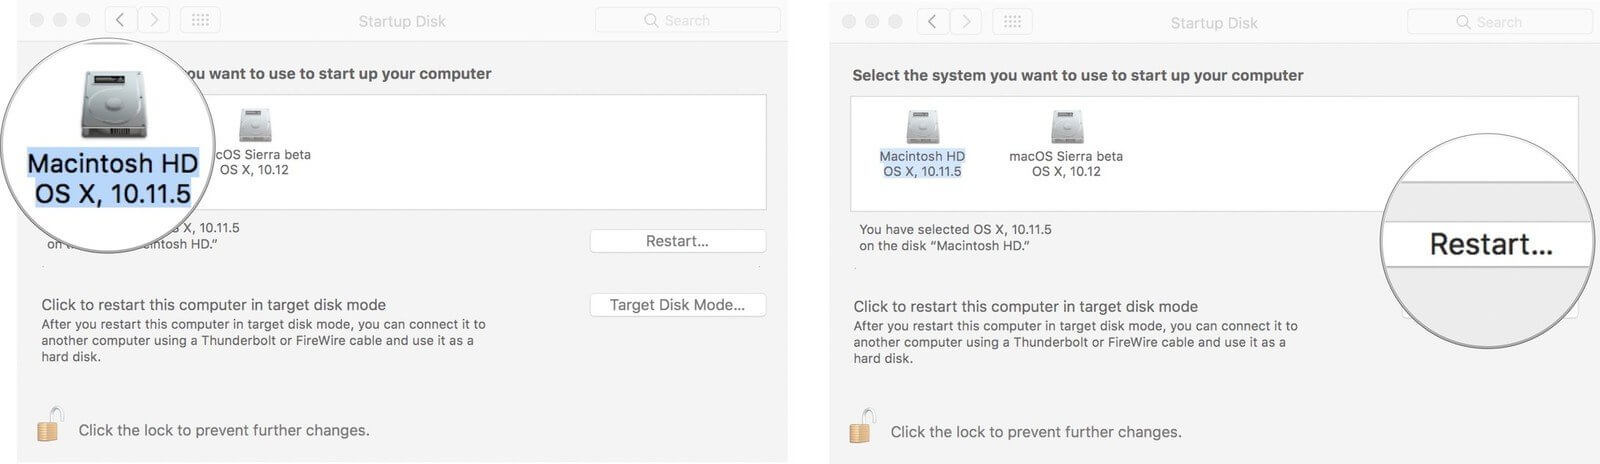 Как запускать две системы на Mac. Можно изменить загрузочный диск в системных настройках или при загрузке Mac. Фото.